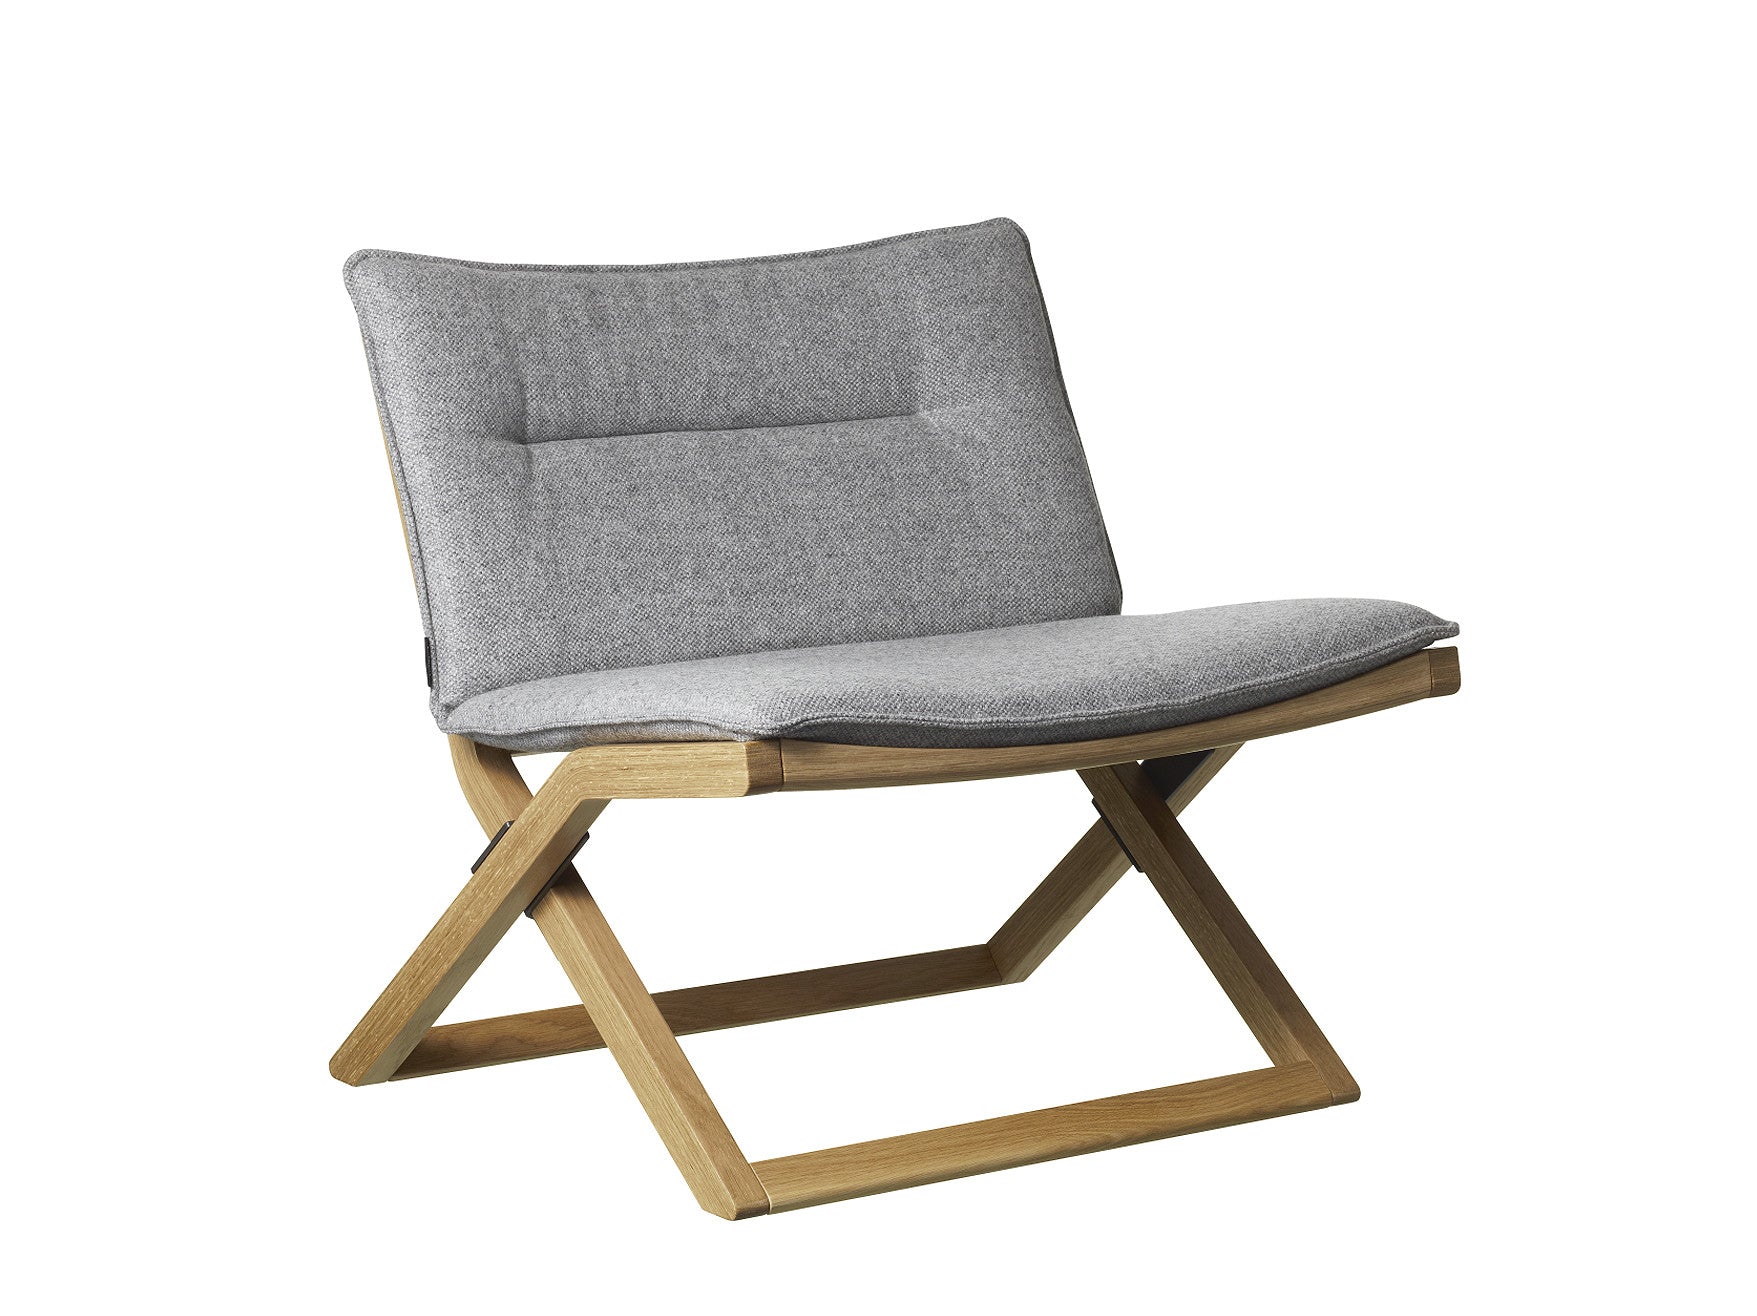 Schwedische Design Sthle Sessel Und Bnke Online Bestellen Bei